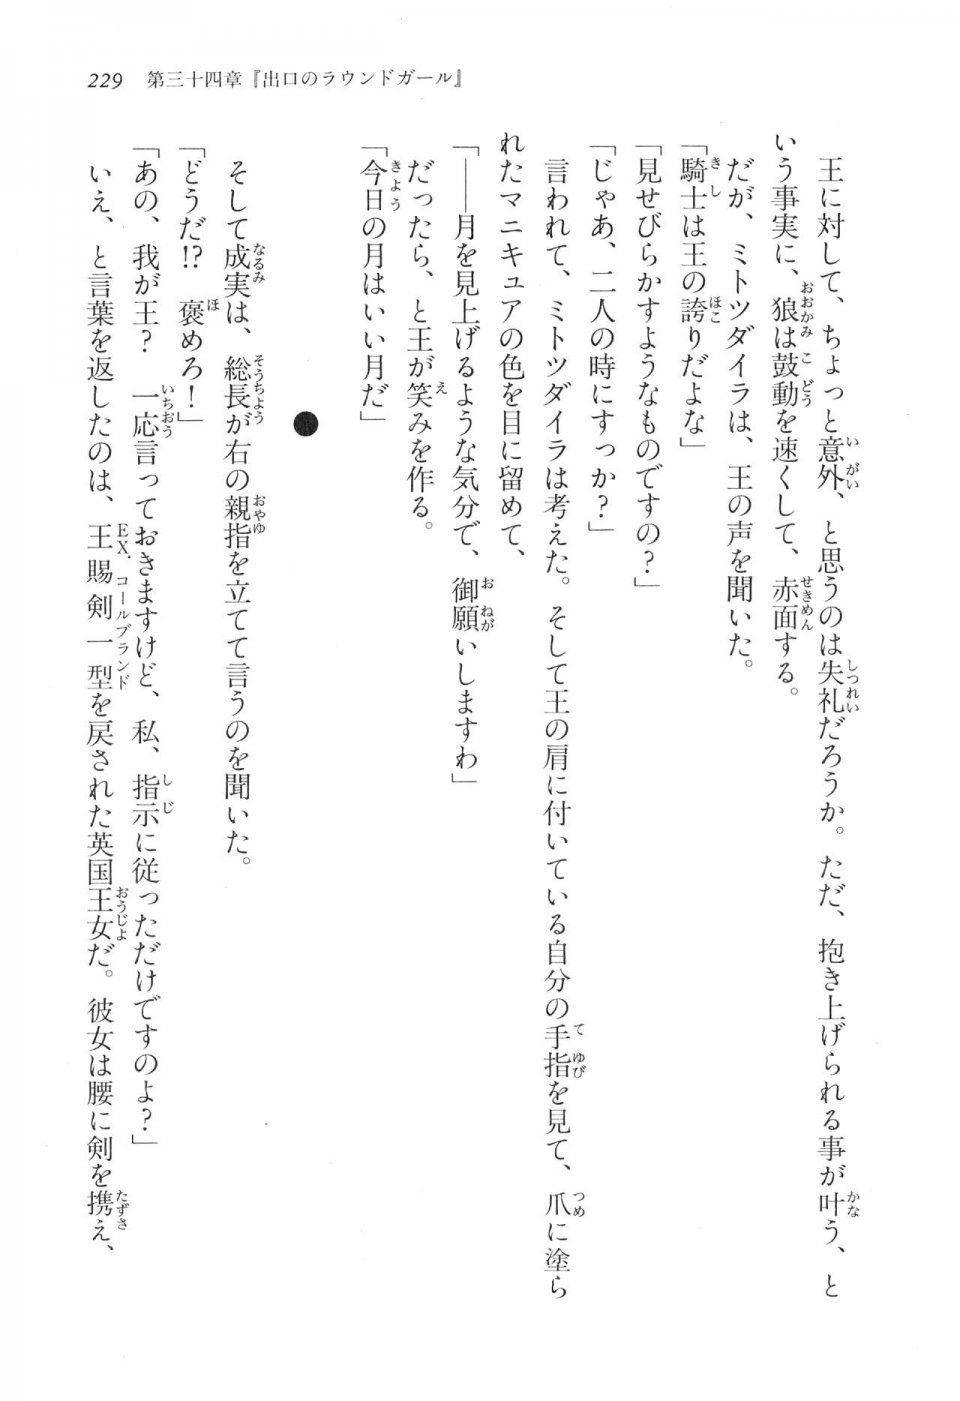 Kyoukai Senjou no Horizon LN Vol 17(7B) - Photo #229